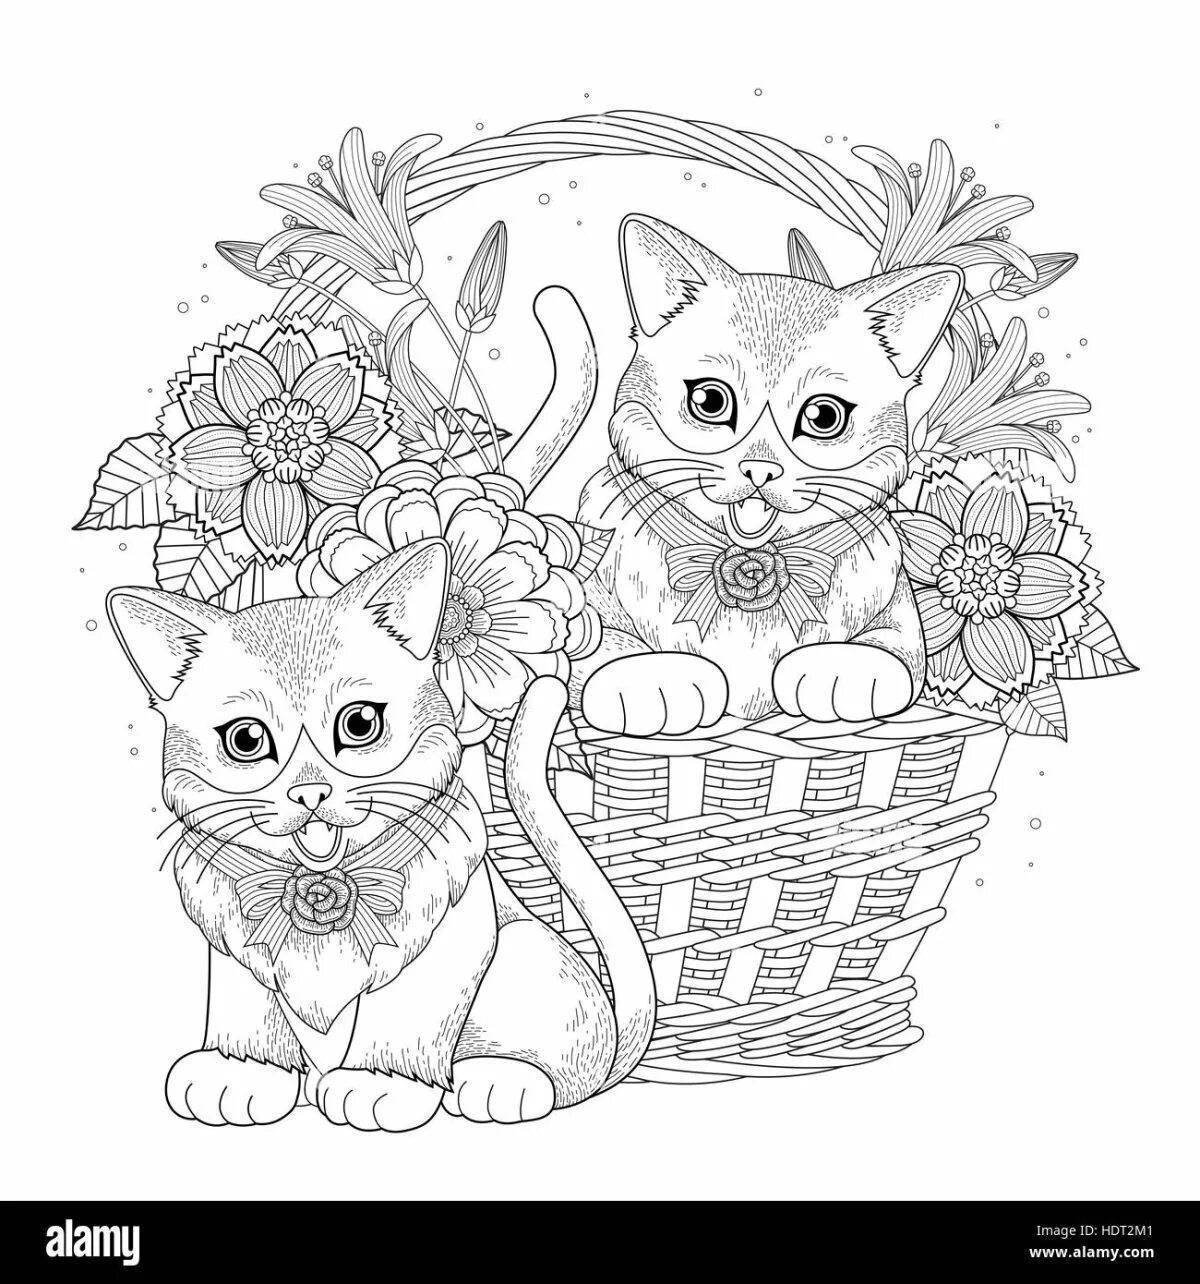 Раскраска Антистресс кот и домик